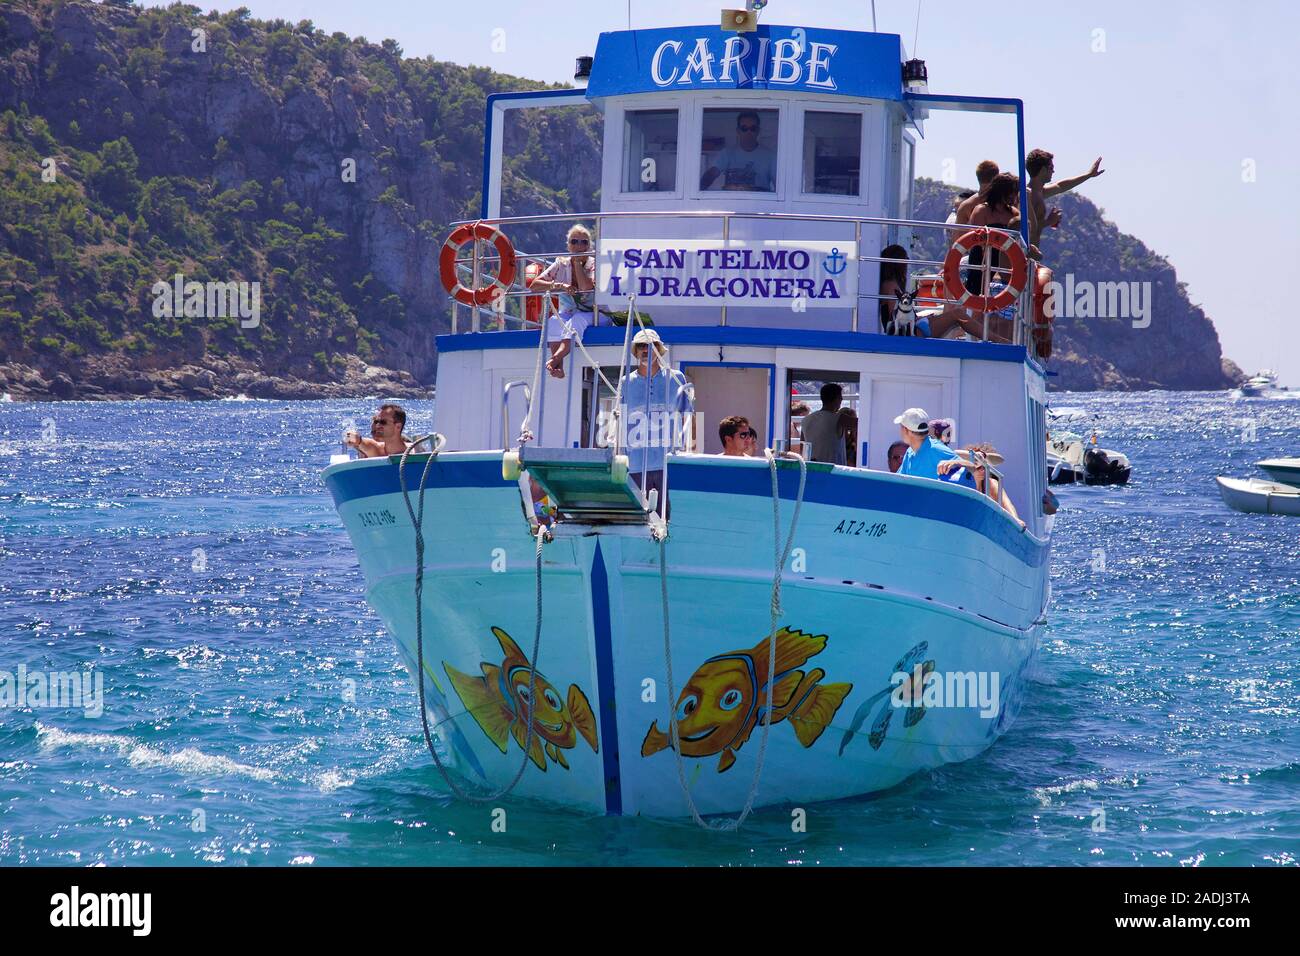 Les touristes sur un bateau de plaisance à petit Pantaleu island, San Telmo, Majorque, îles Baléares, Espagne Banque D'Images